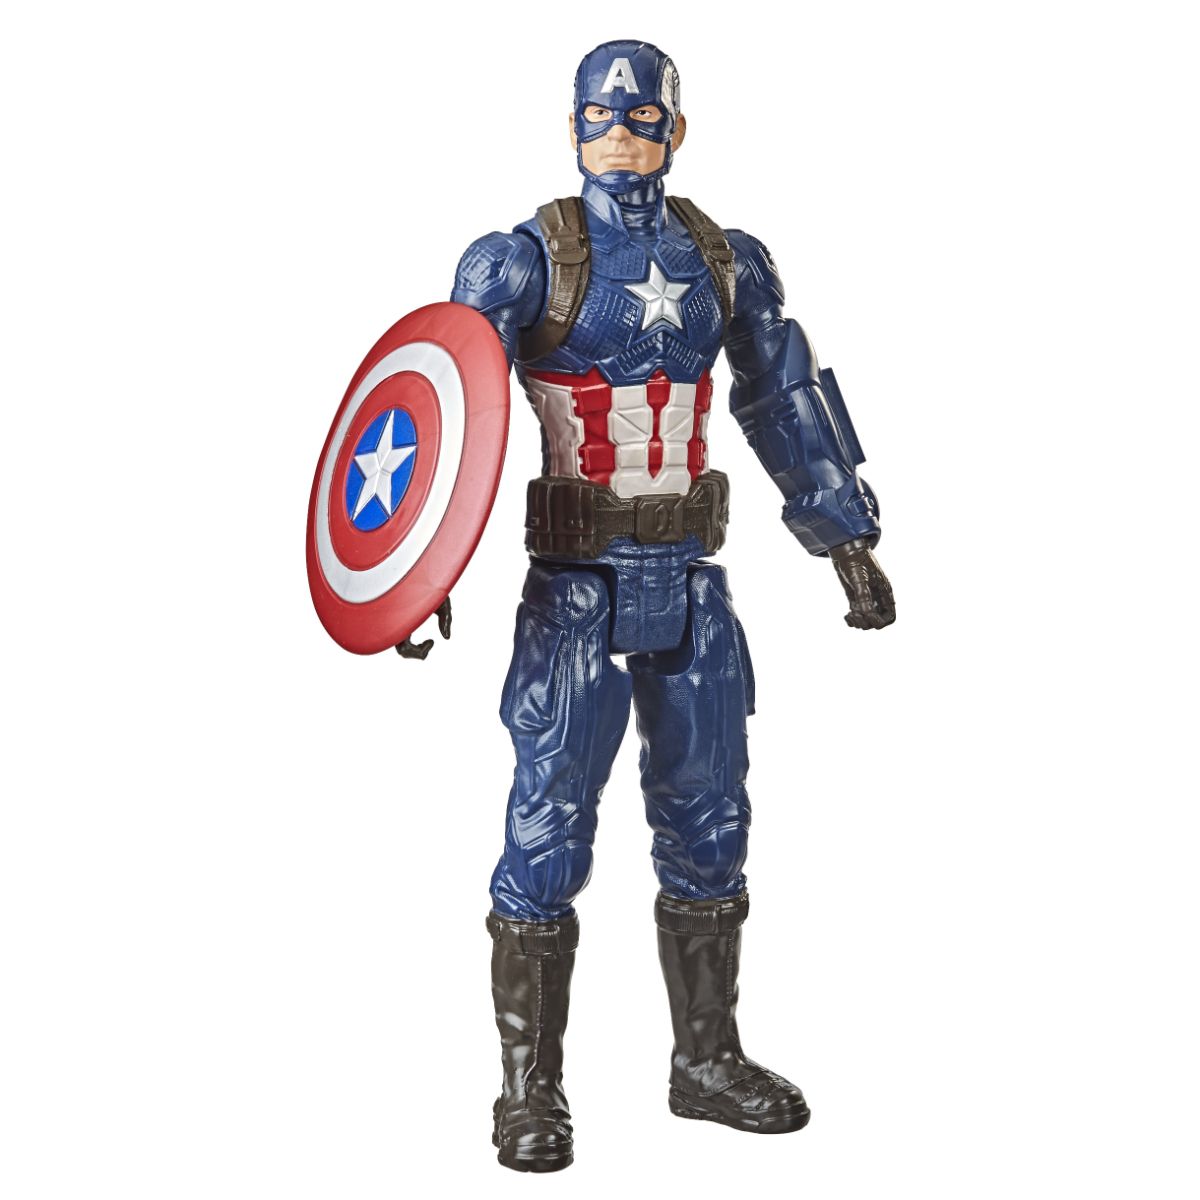 Titan Hero Series Collectible Captain America